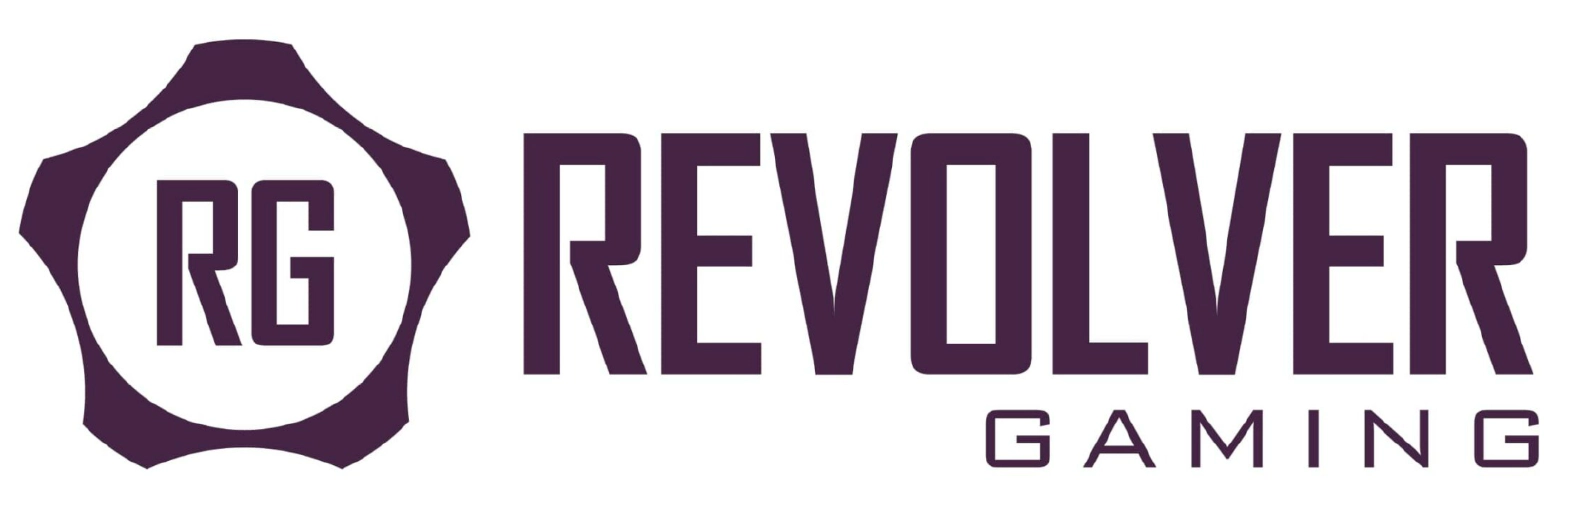 Revolver Gaming Provider